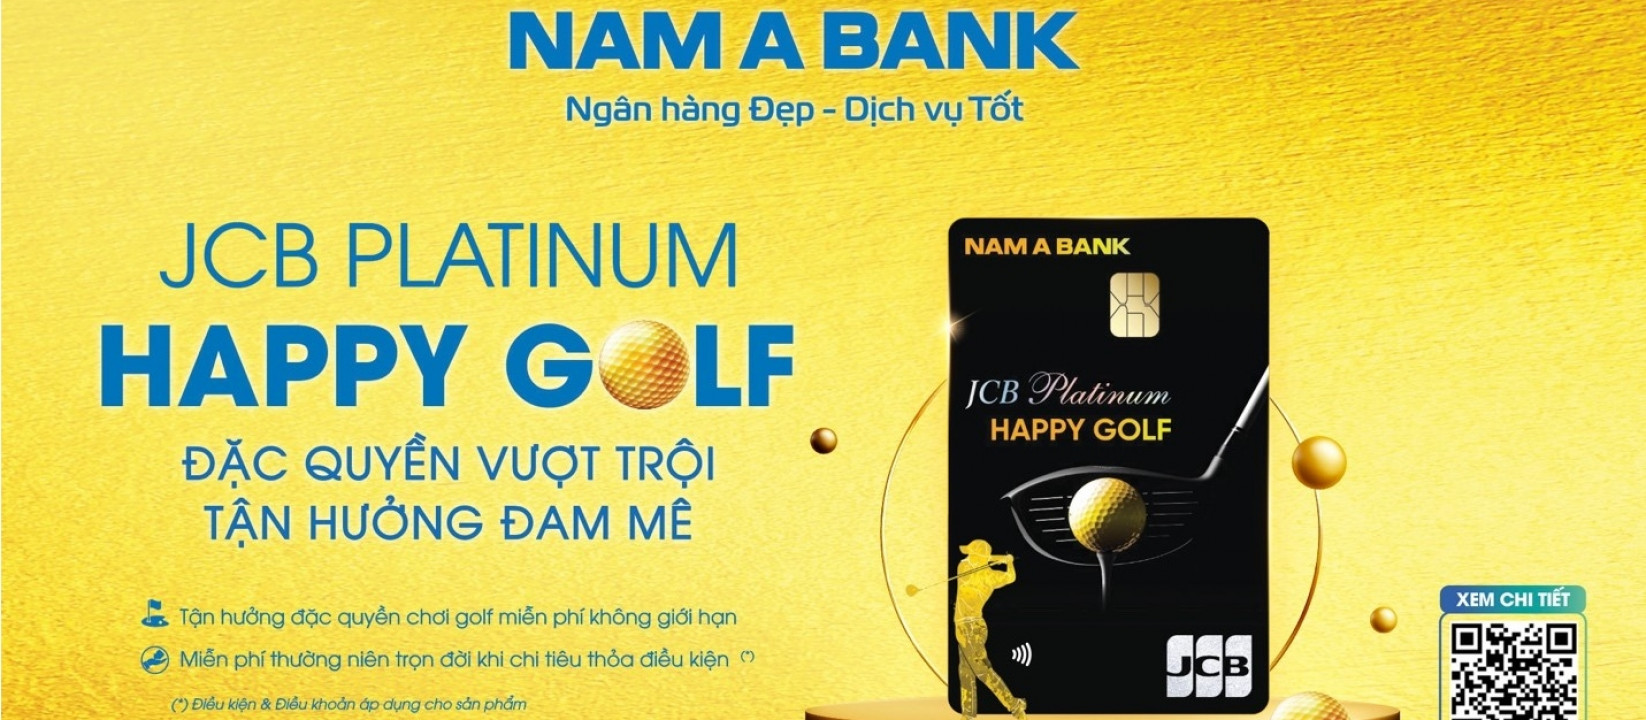 JCB Platinum Happy Golf mang đến nhiều tiện ích đẳng cấp dành cho cộng đồng golfer Việt